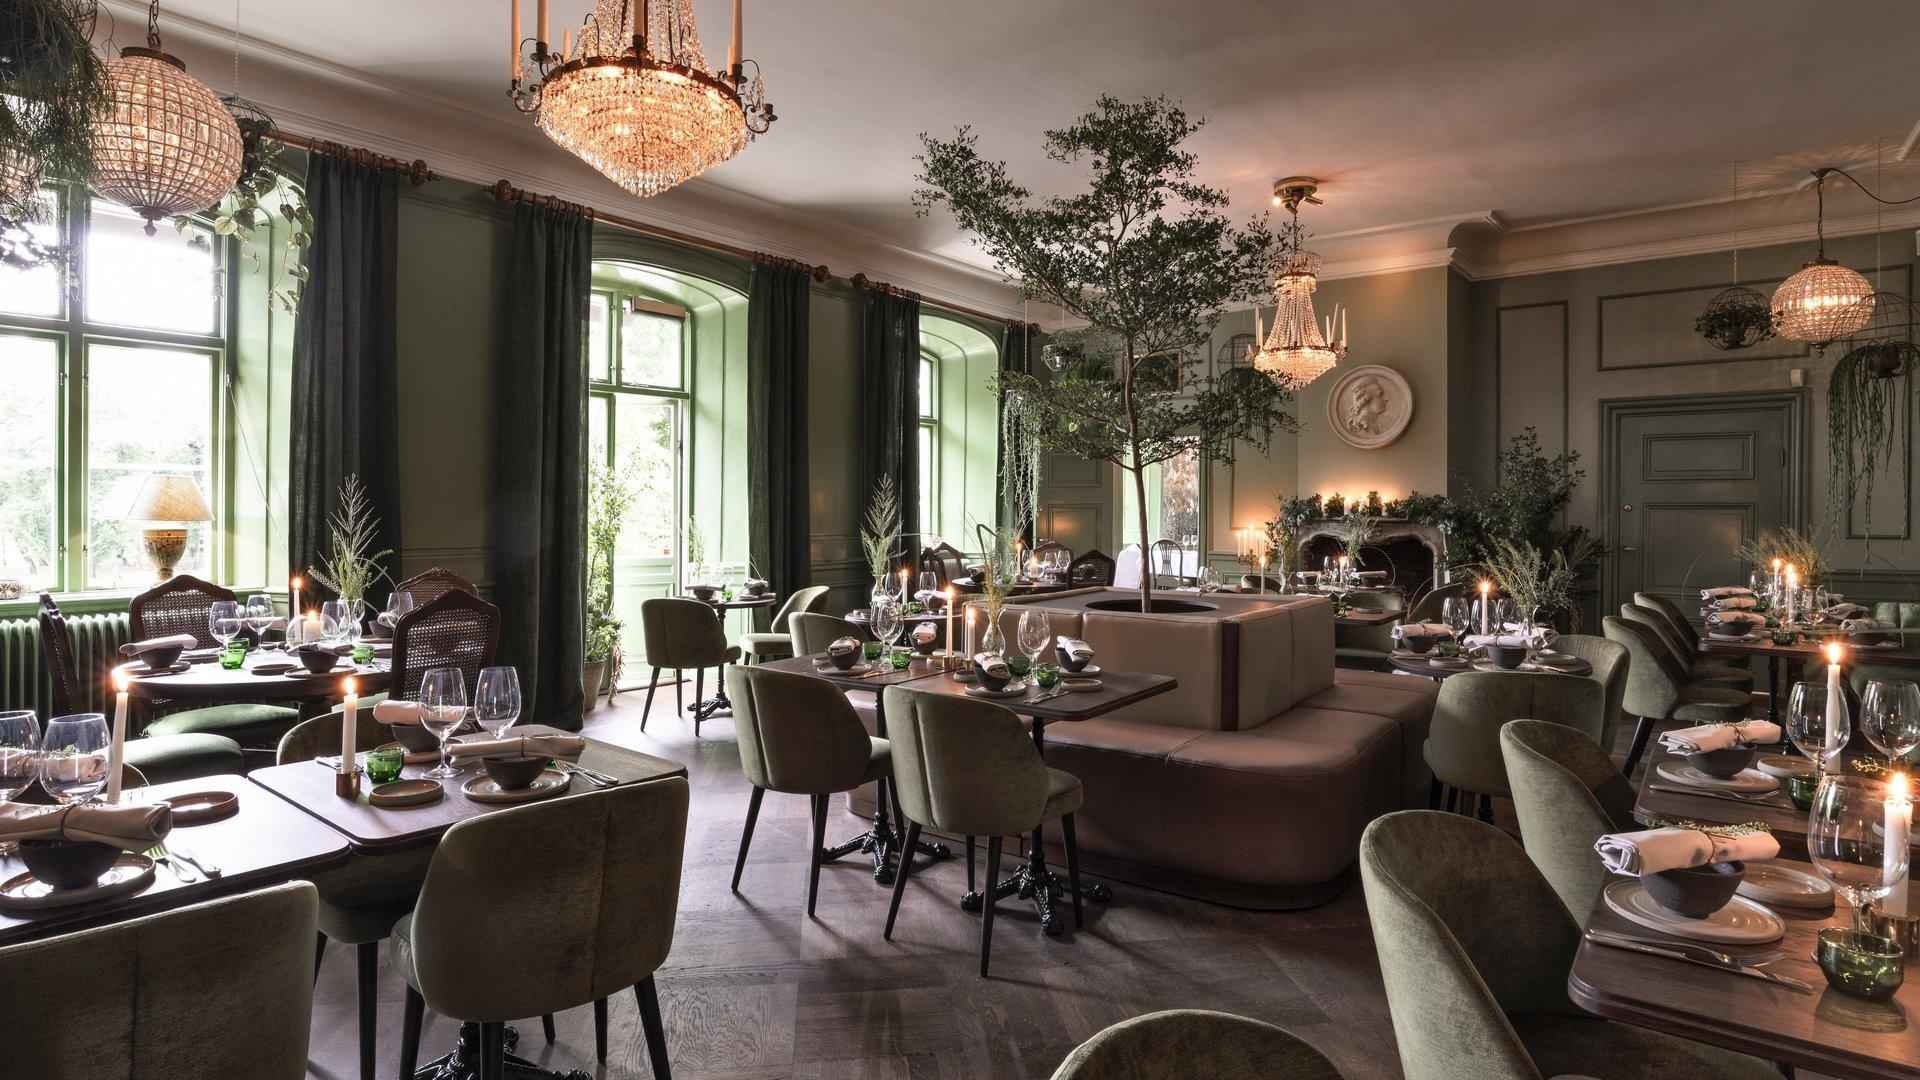 Une grande salle à manger décorée de tables en bois, chaises vertes et murs peints en vert.